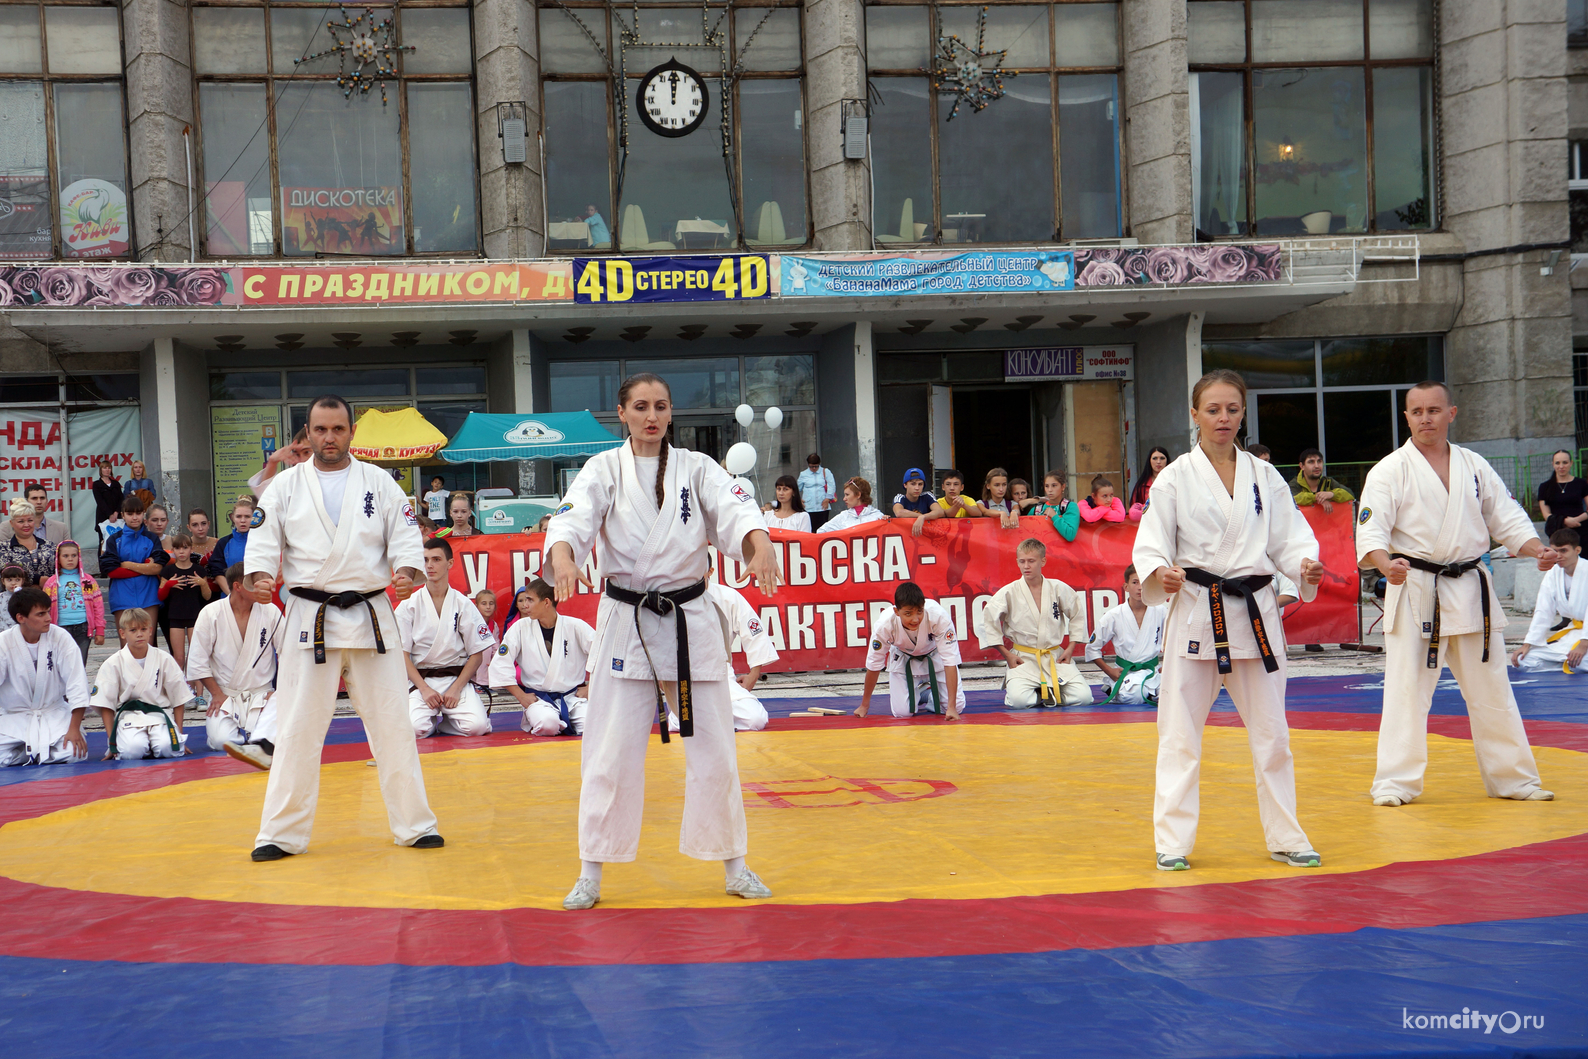 В рамках спортивного праздника «На старт выходит Комсомольск» на площади Юности состоялись показательные выступления спортсменов